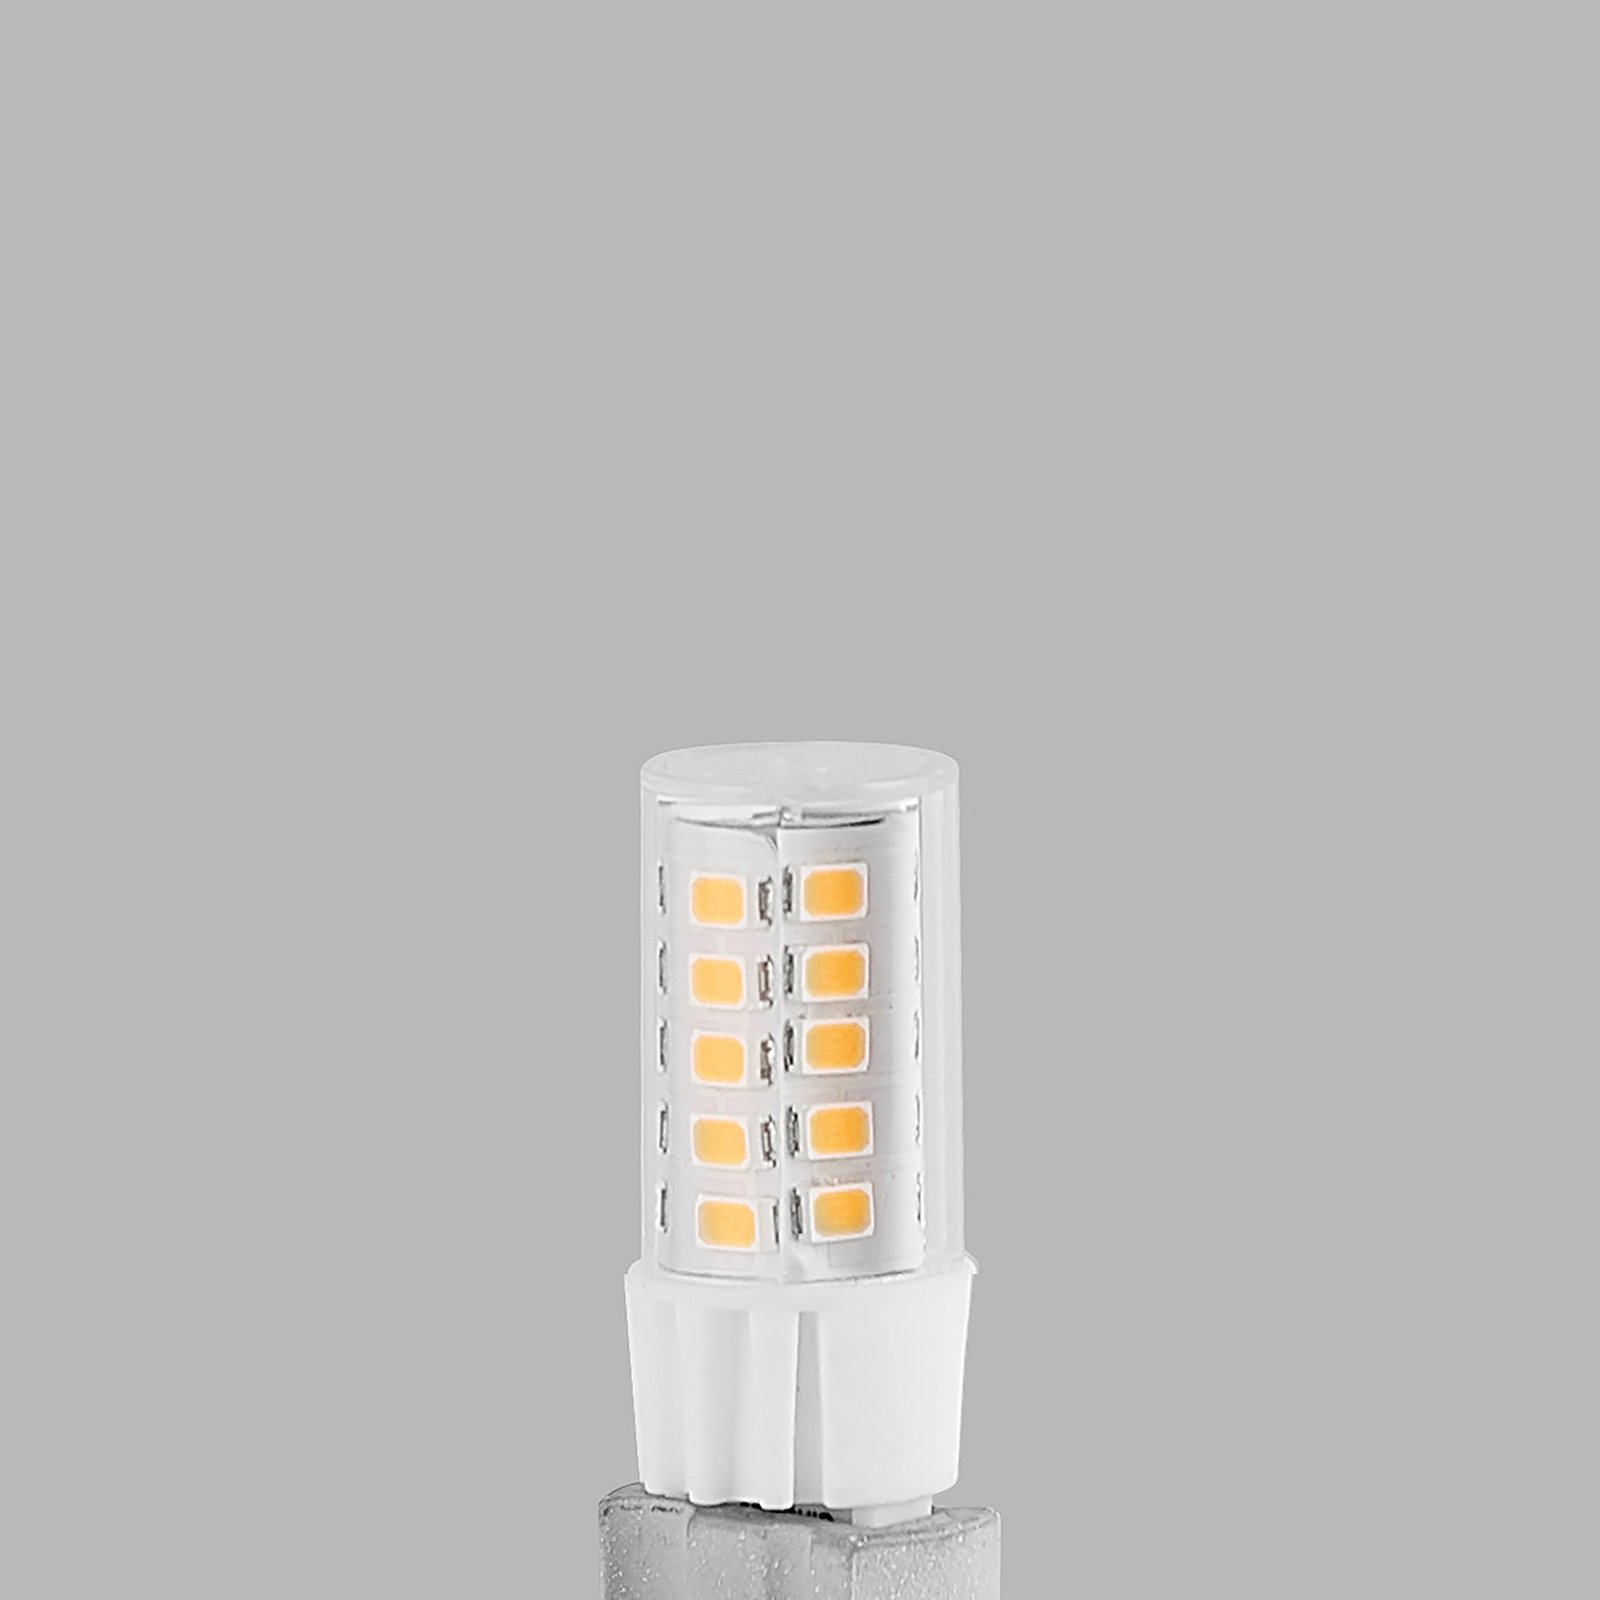 Arcchio bi-pin LED bulb G9 3.5 W 830 2-pack